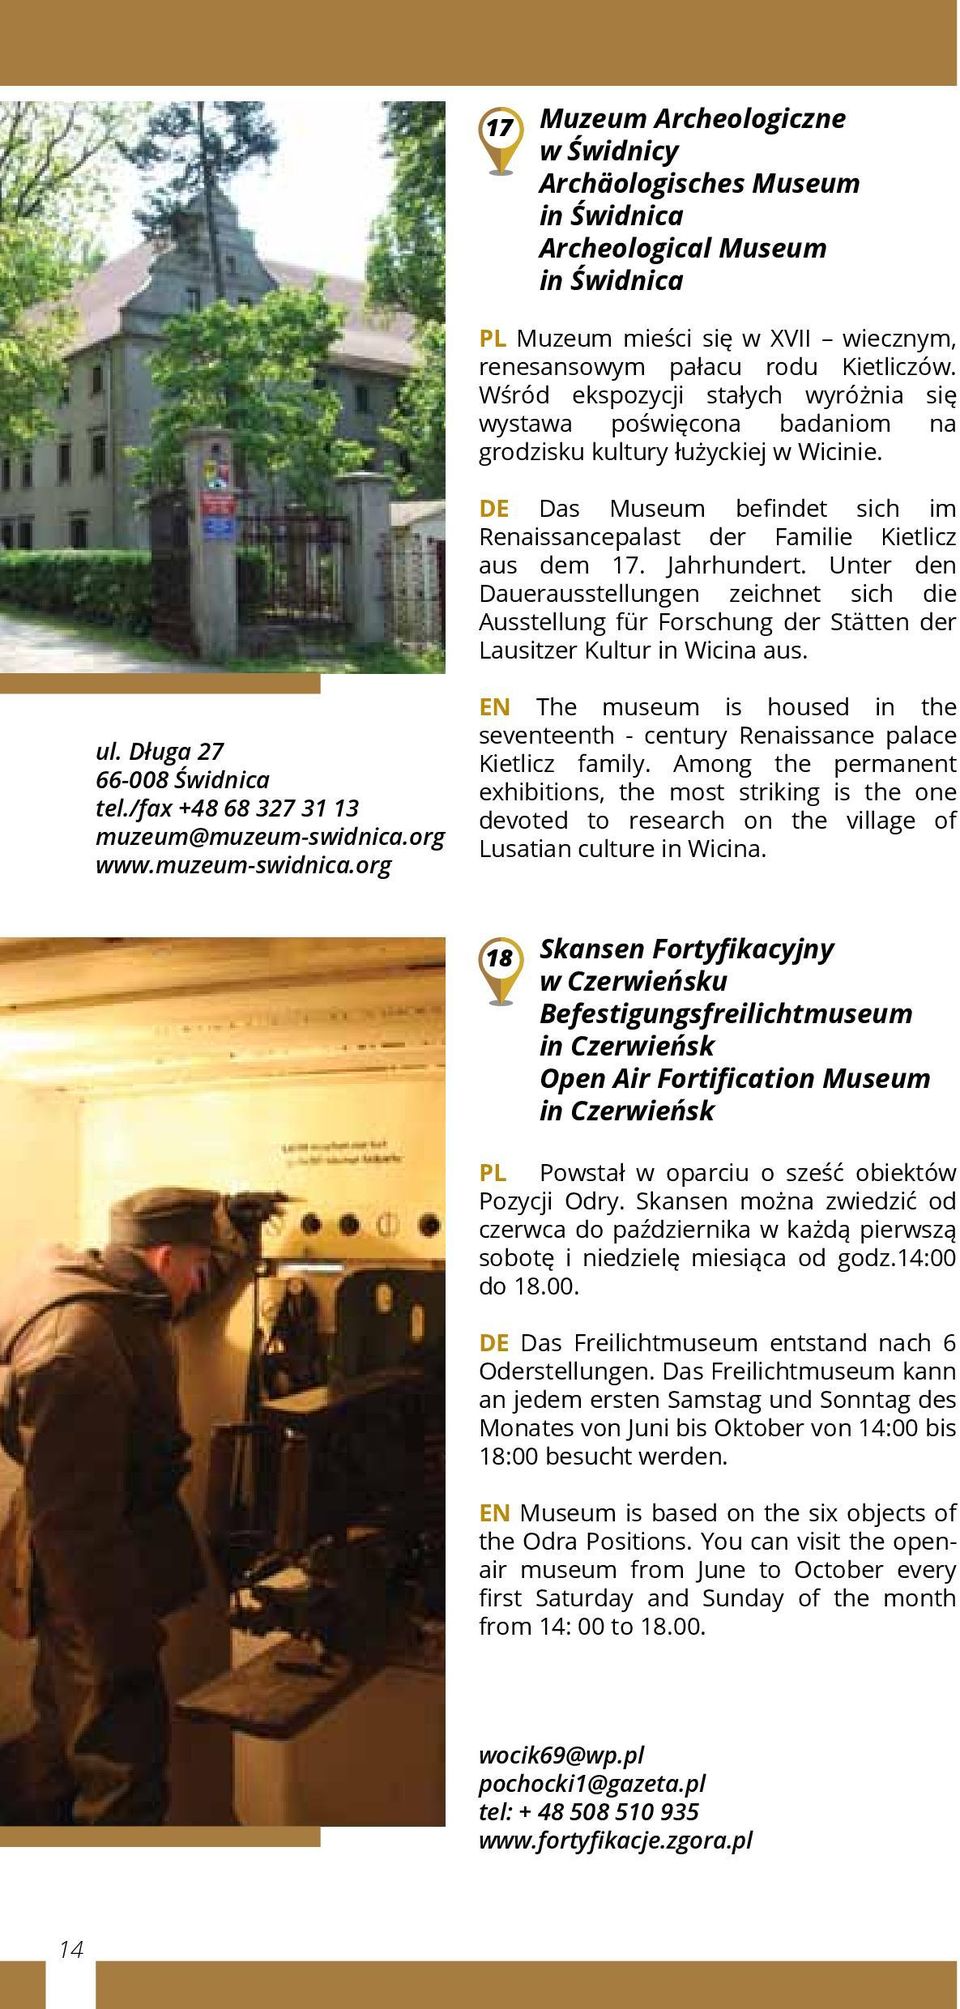 Jahrhundert. Unter den Dauerausstellungen zeichnet sich die Ausstellung für Forschung der Stätten der Lausitzer Kultur in Wicina aus. ul. Długa 27 66-008 Świdnica tel.